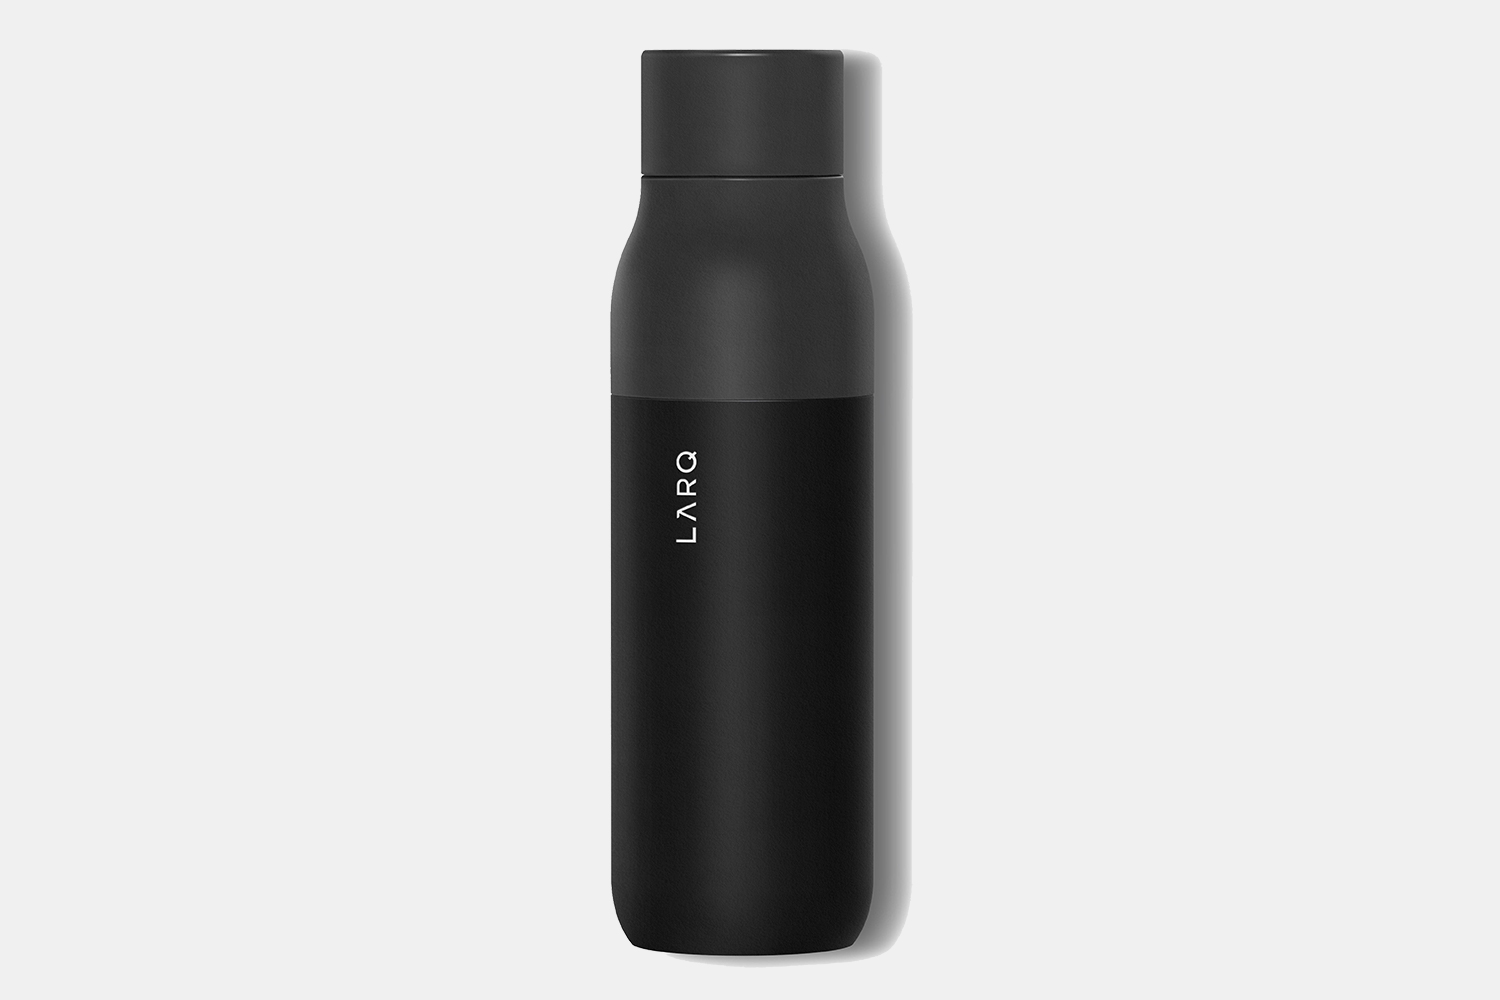 Larq Self-Cleaning Water Bottle